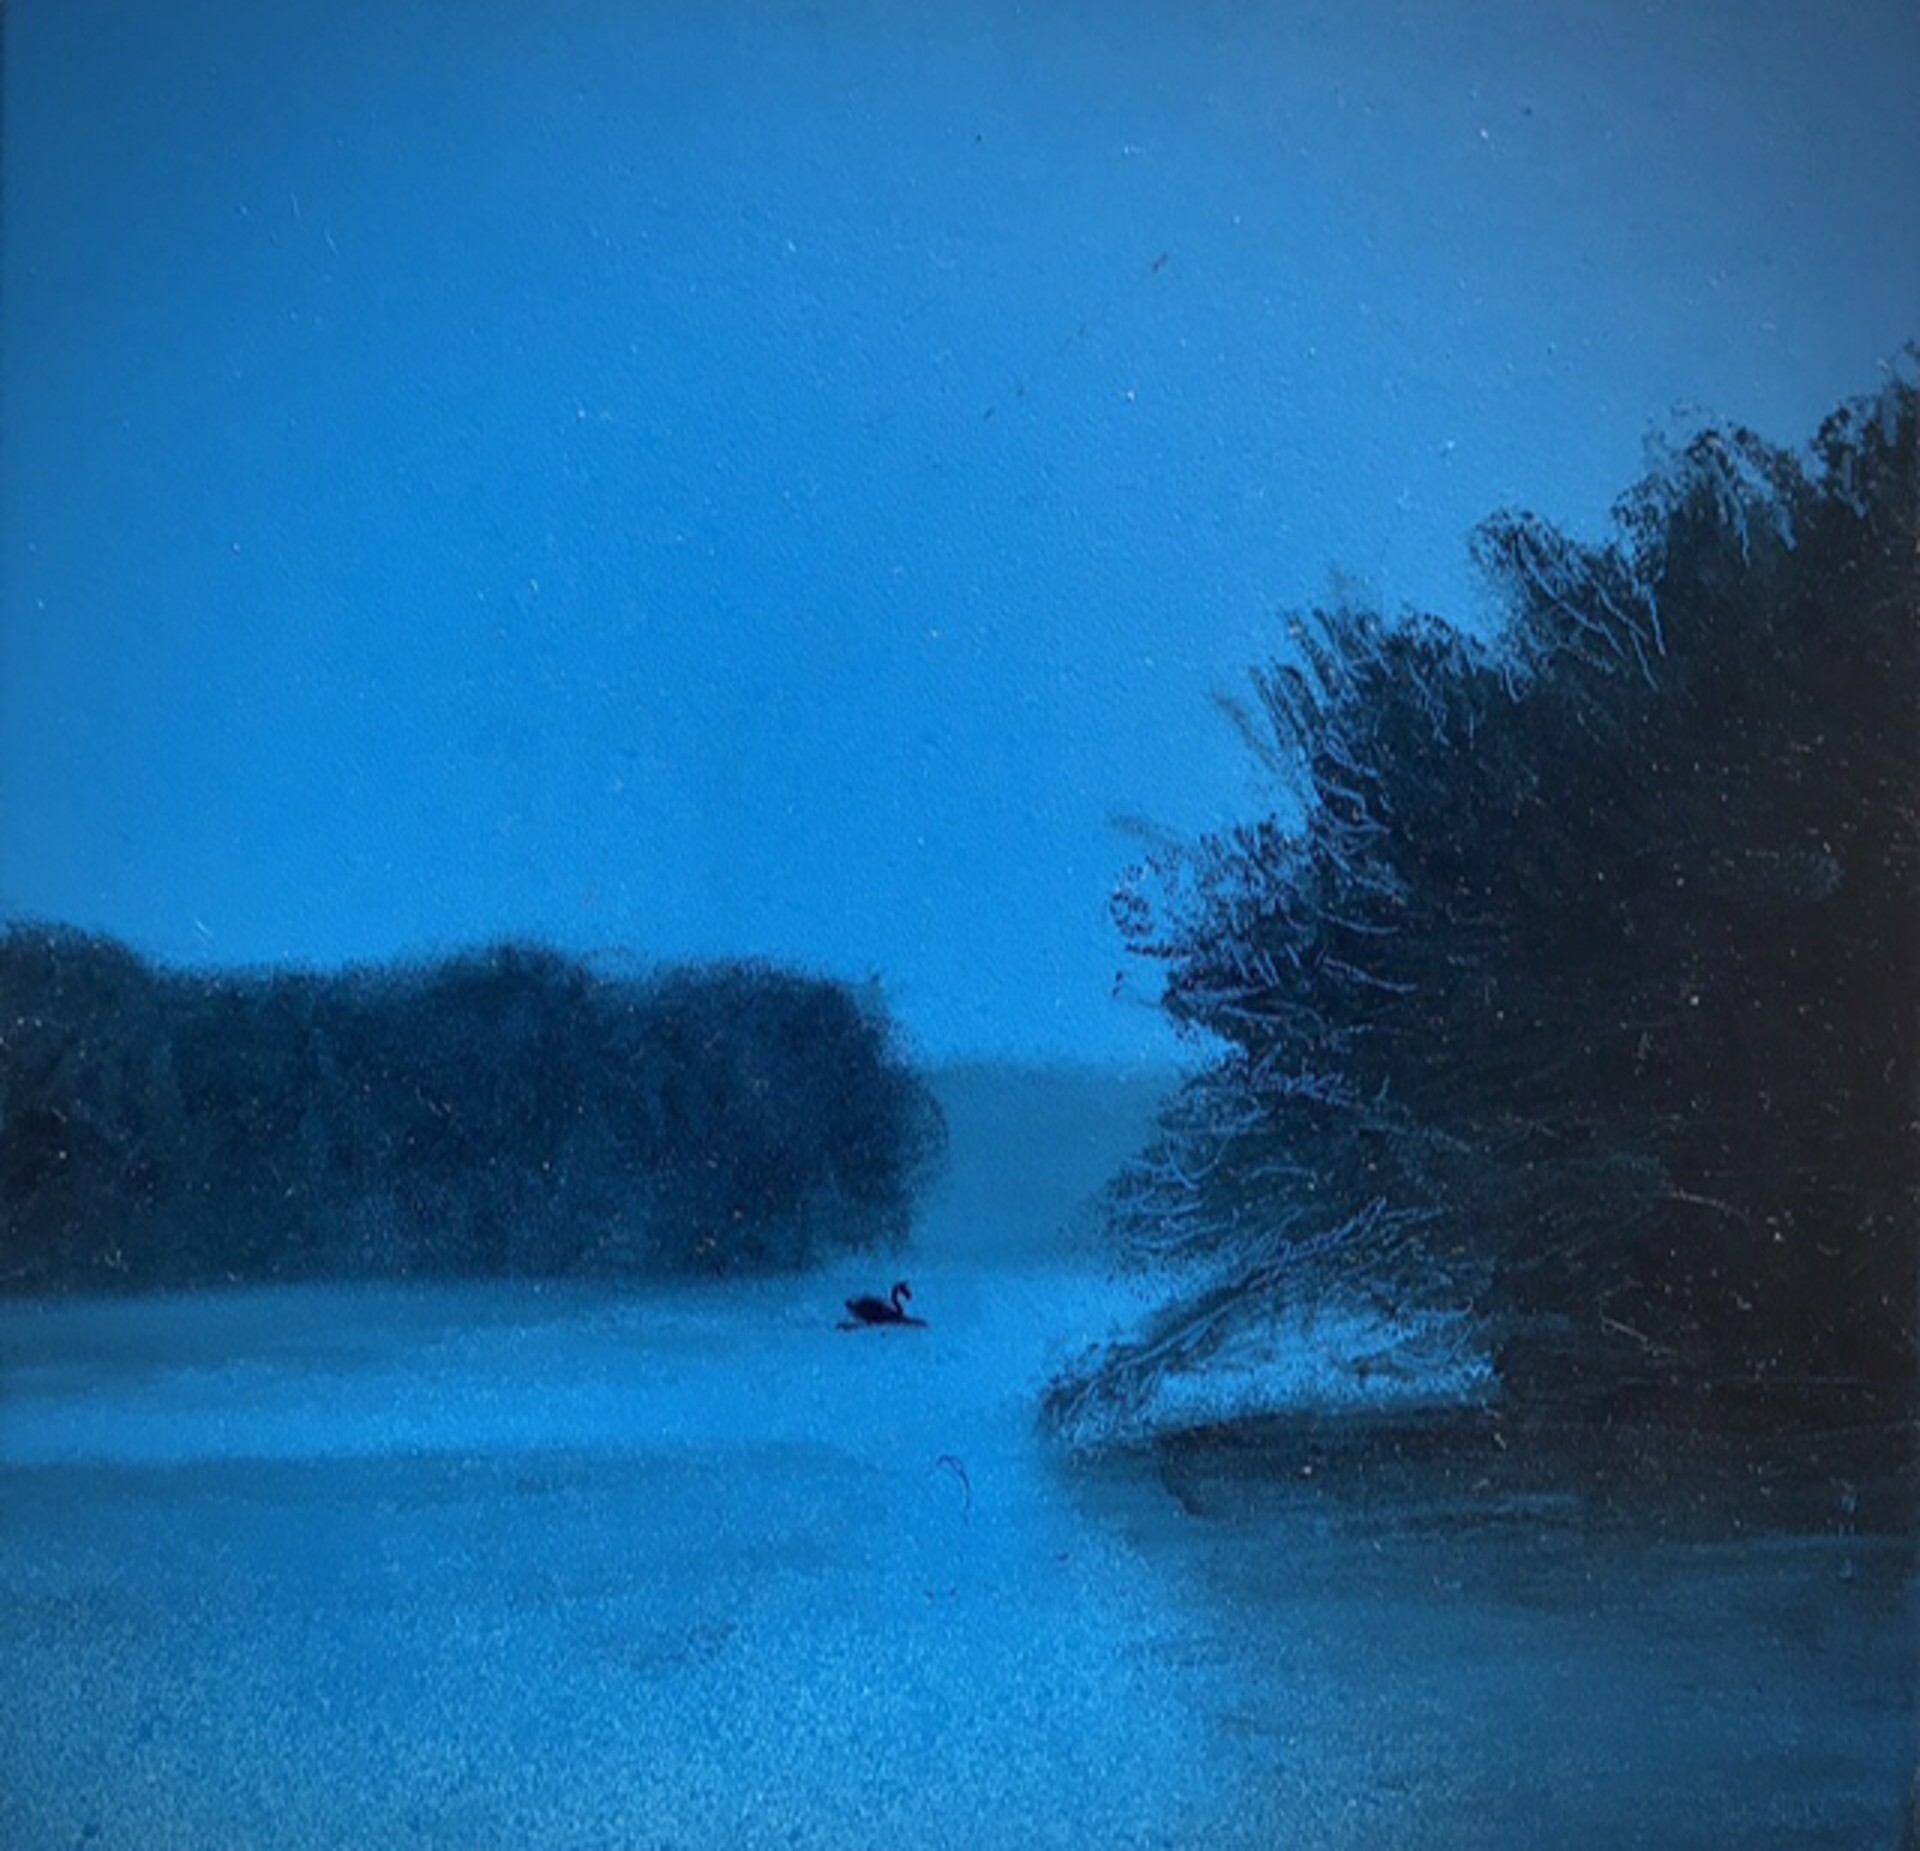 American Landscape (Blue Swan II) by Lauren Ewing